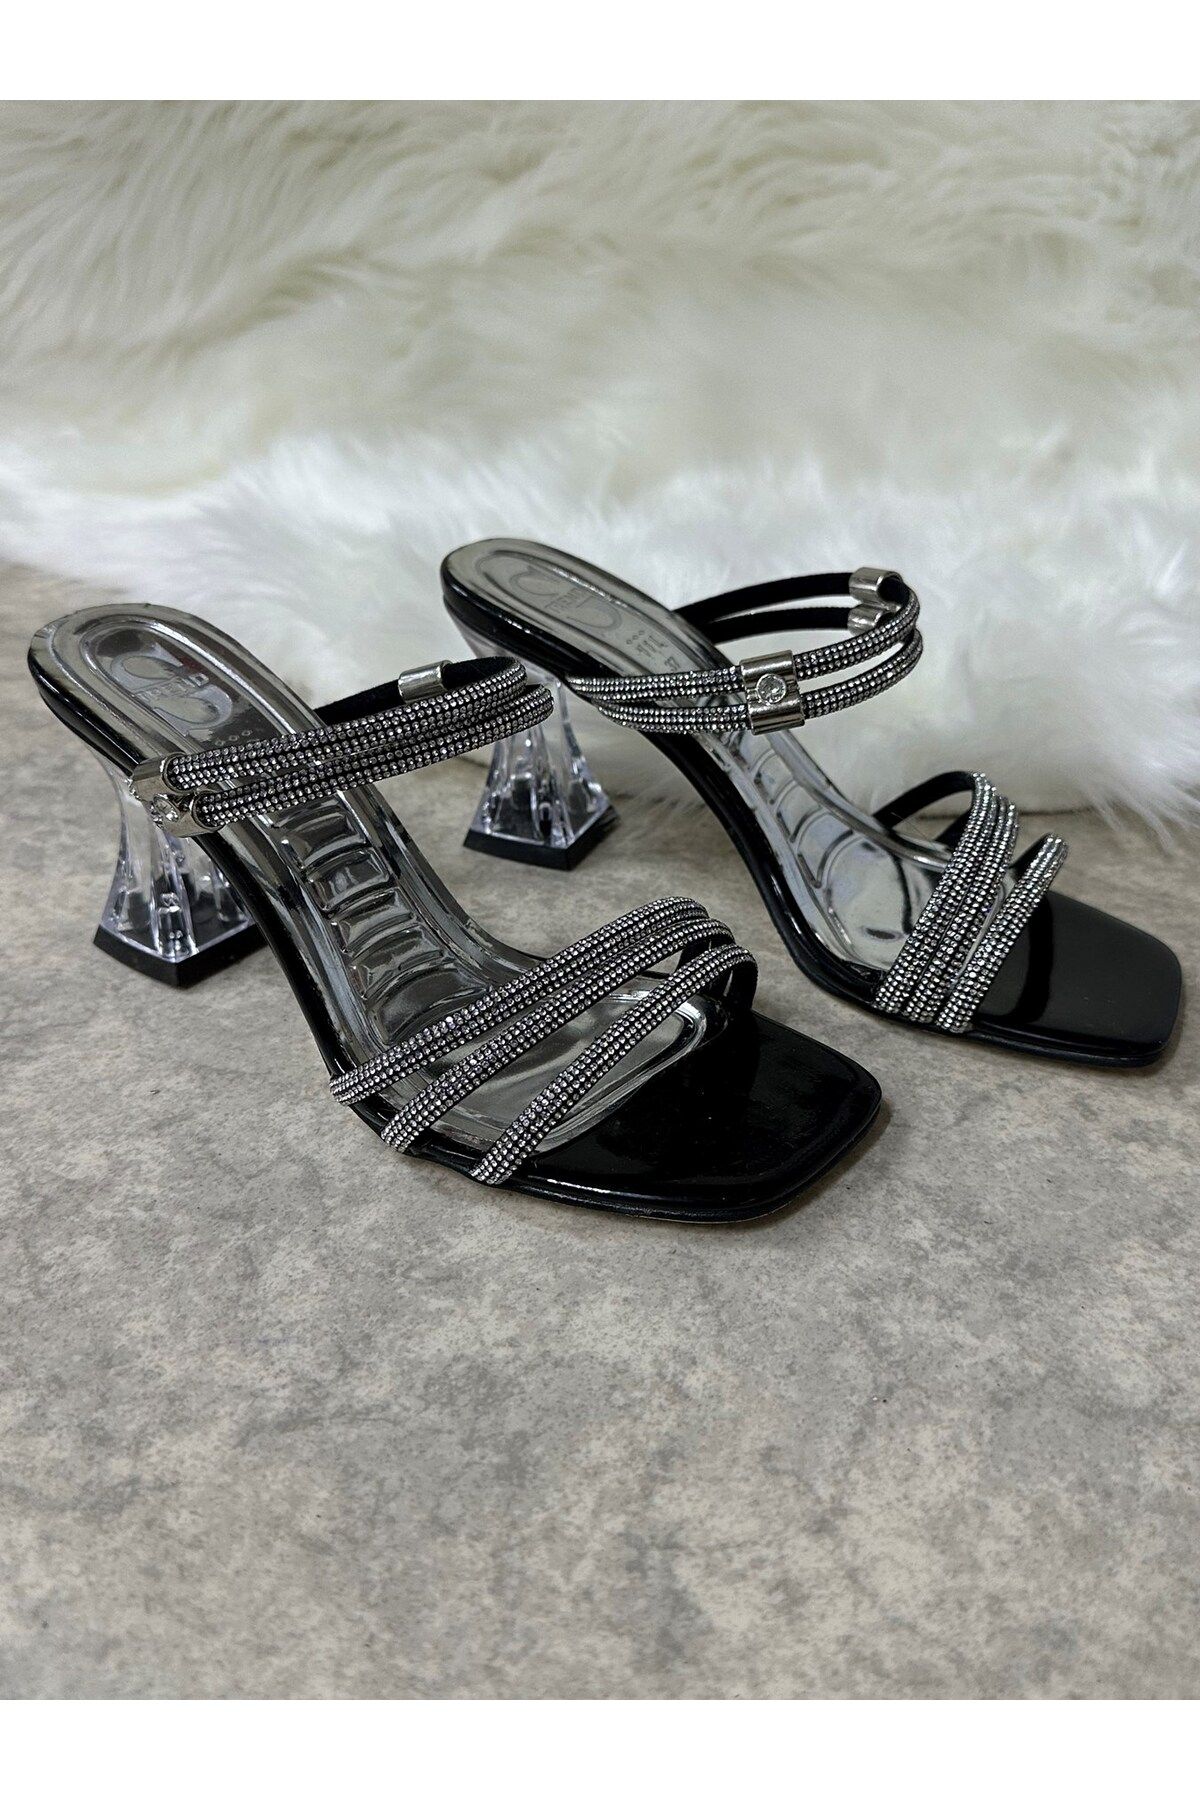 İmerShoes Günlük Kadın Siyah Taşlı Terlik Hologram Kalın Şeffaf Topuk Üç Bantlı Abiye Sandalet 6100